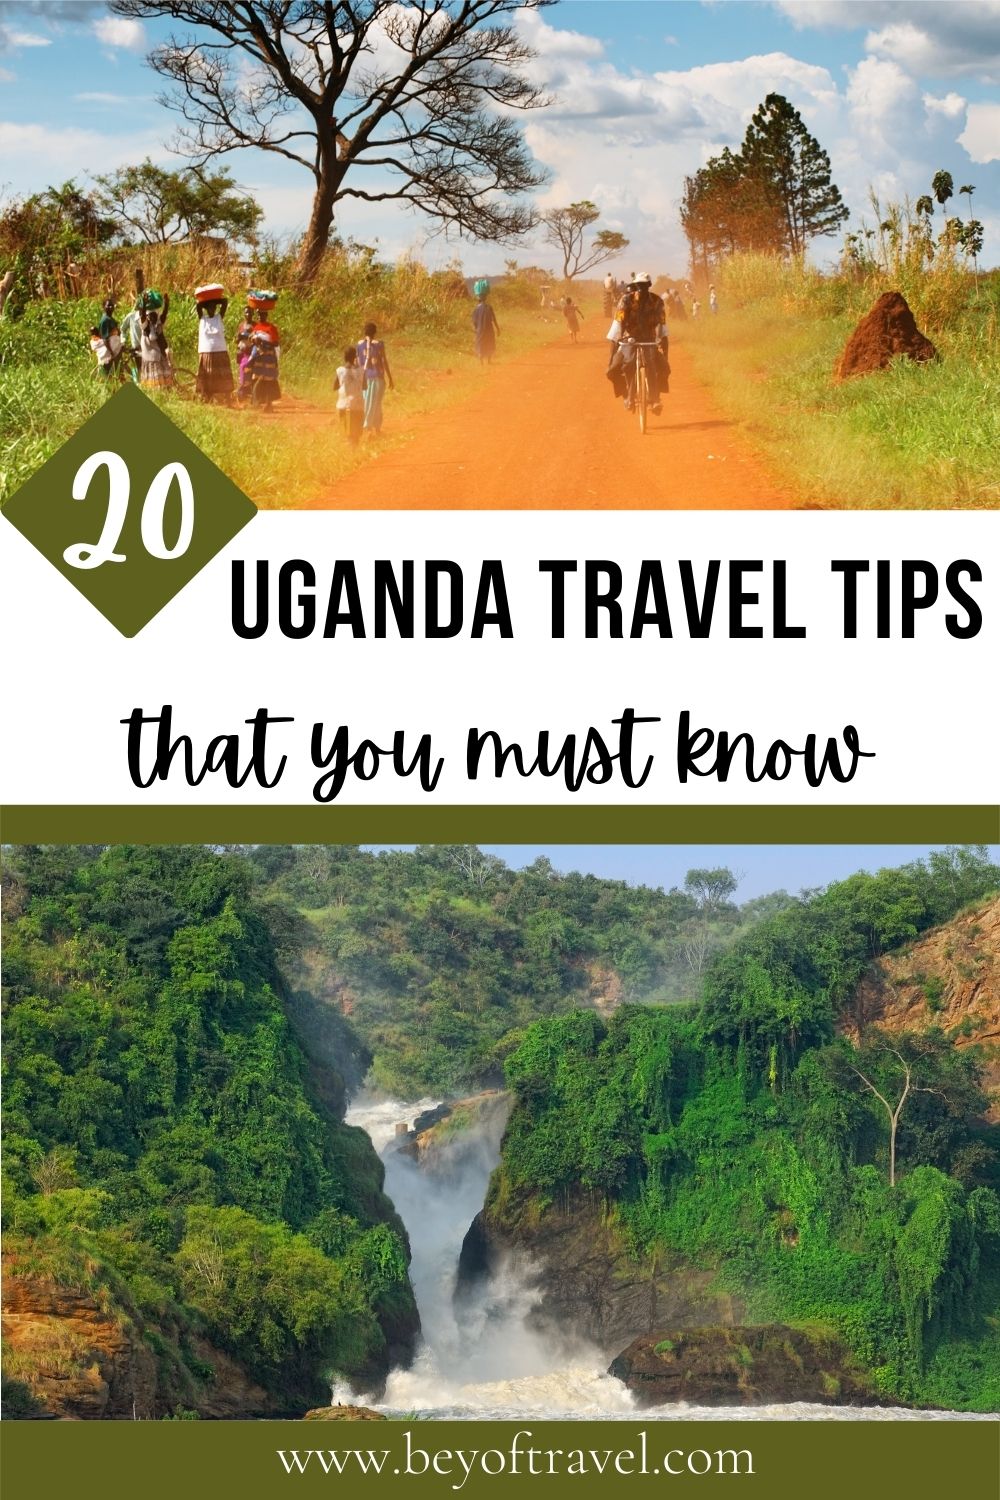 Uganda travel tips